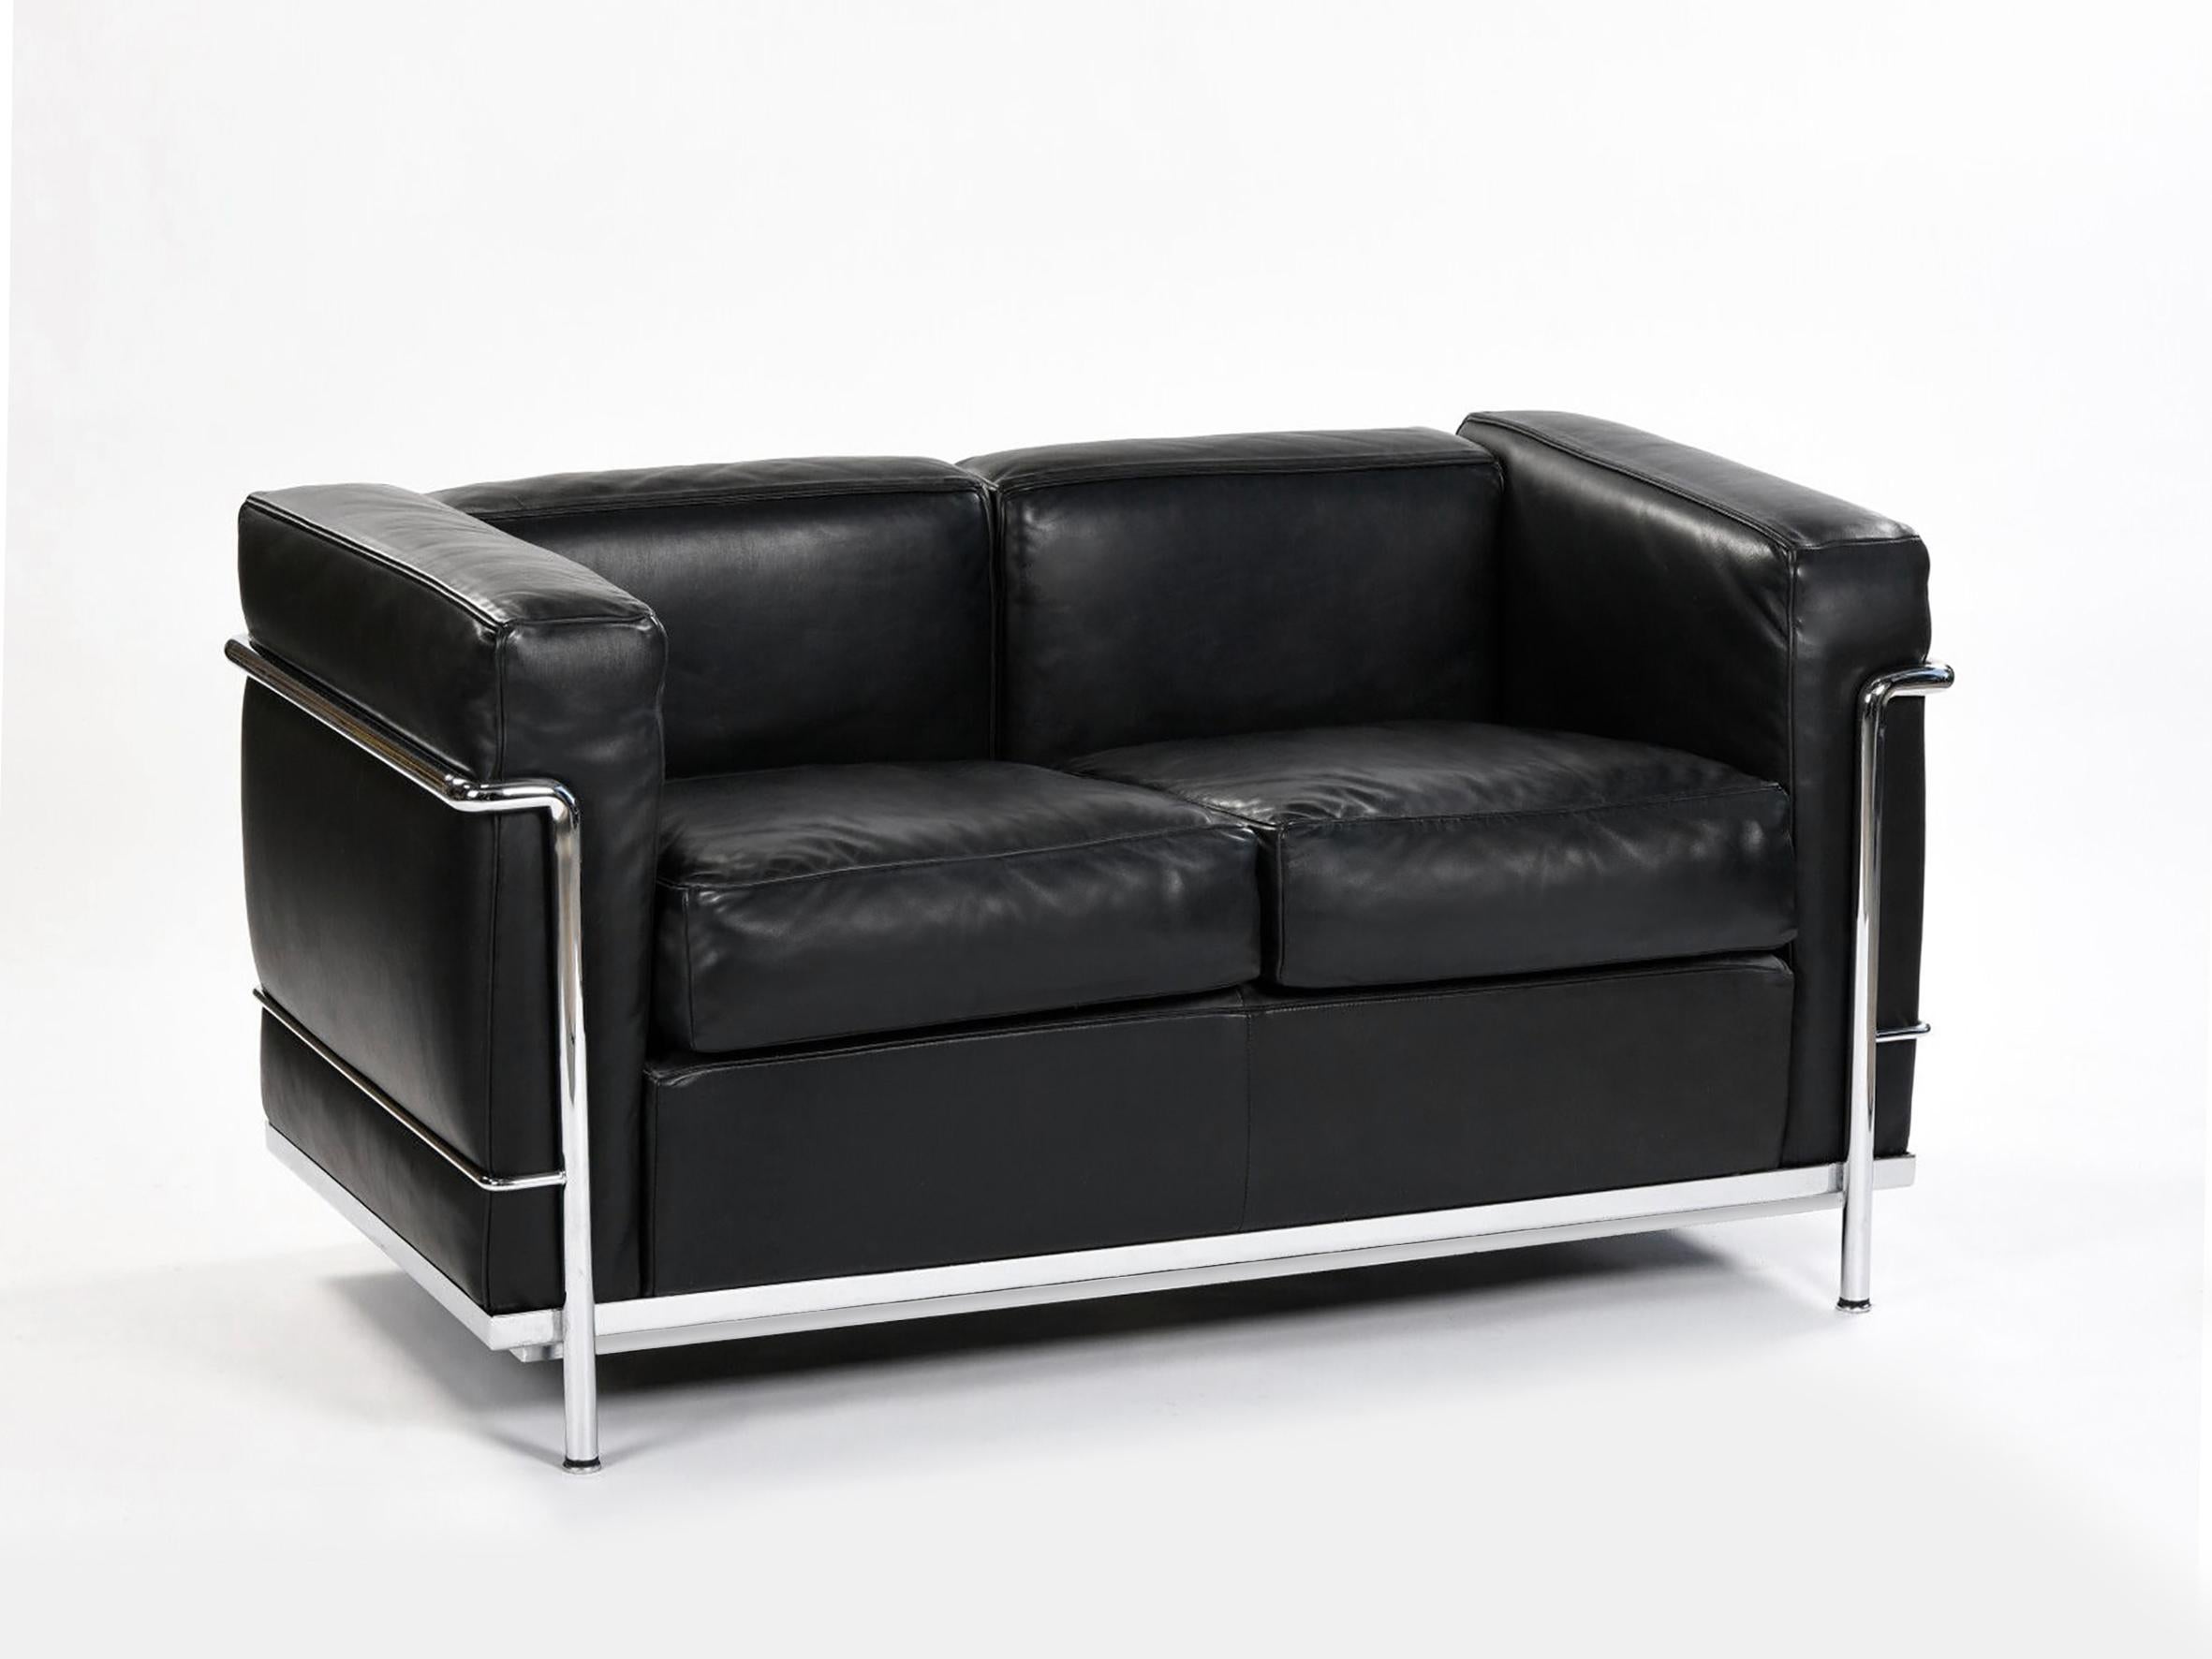 Authentisches Sofa LC3, entworfen von Le Corbusier, Perriand und Jeanneret im Jahr 1928.
Cassina Ausgabe in schwarzem Leder.
Eingravierte Seriennummer und Unterschrift von Cassina.

Sehr guter Zustand.

B 130 cm x T 70 cm x H 69 cm